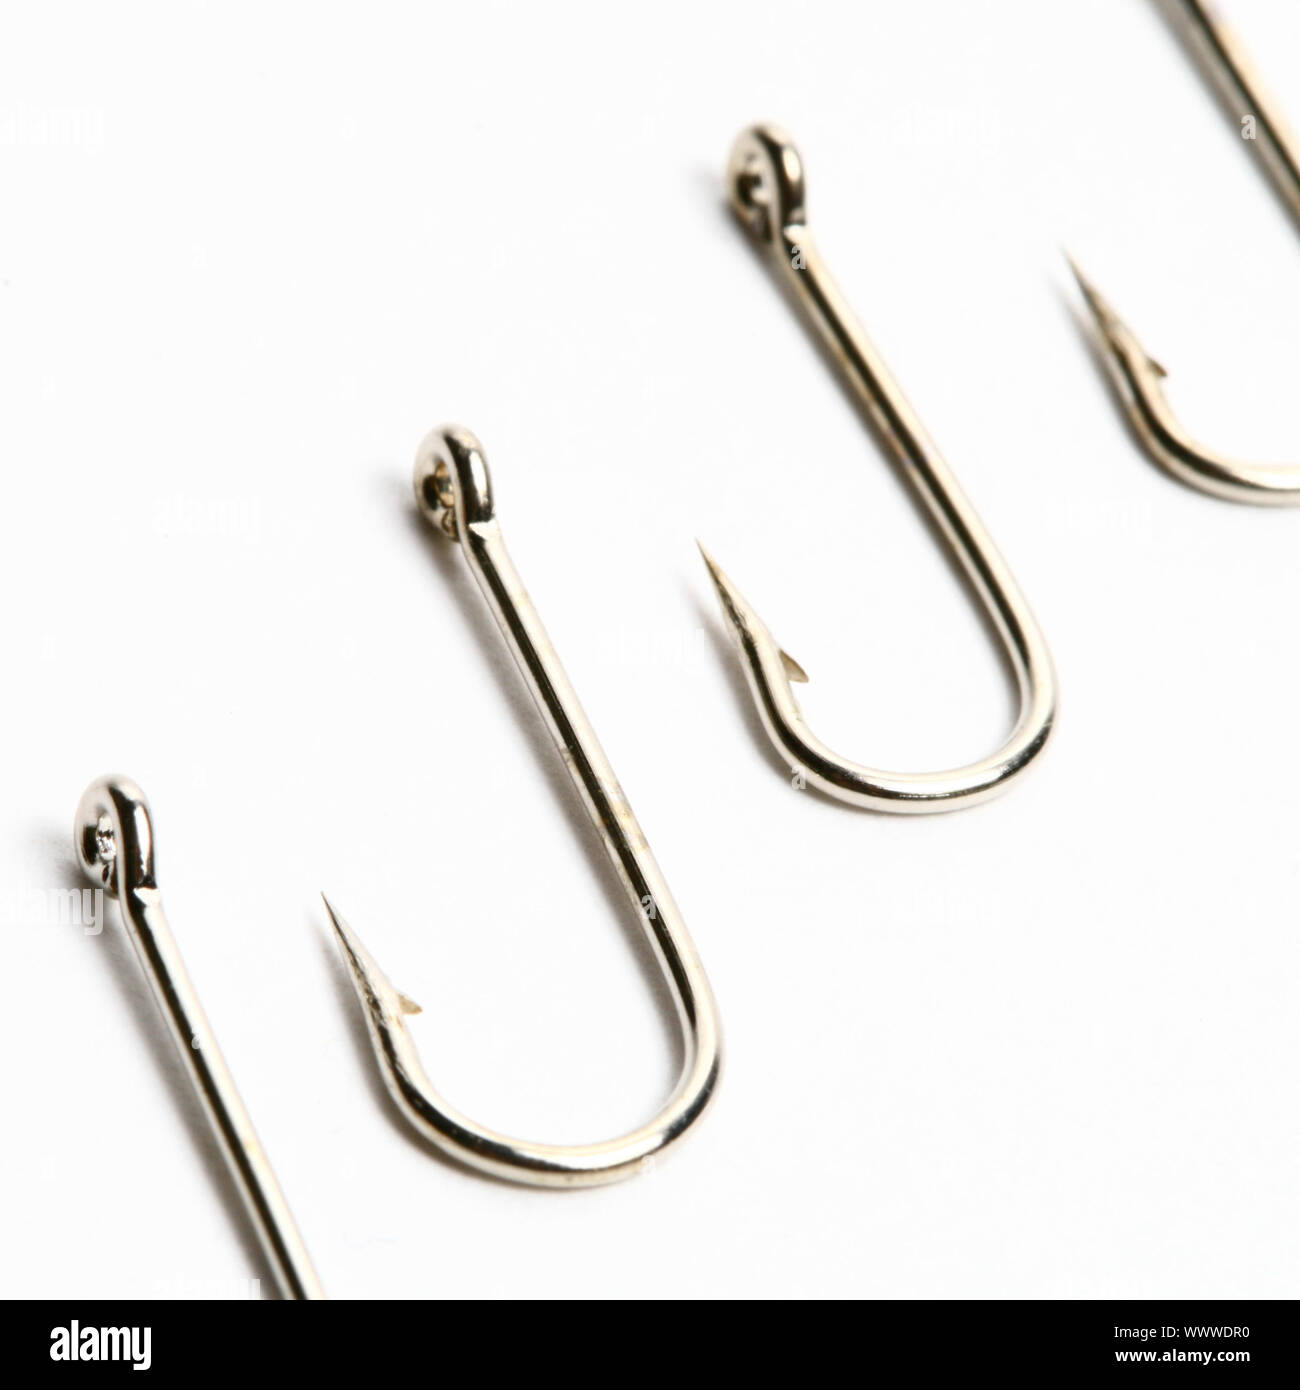 fishing hooks macro close up on white Stock Photo - Alamy